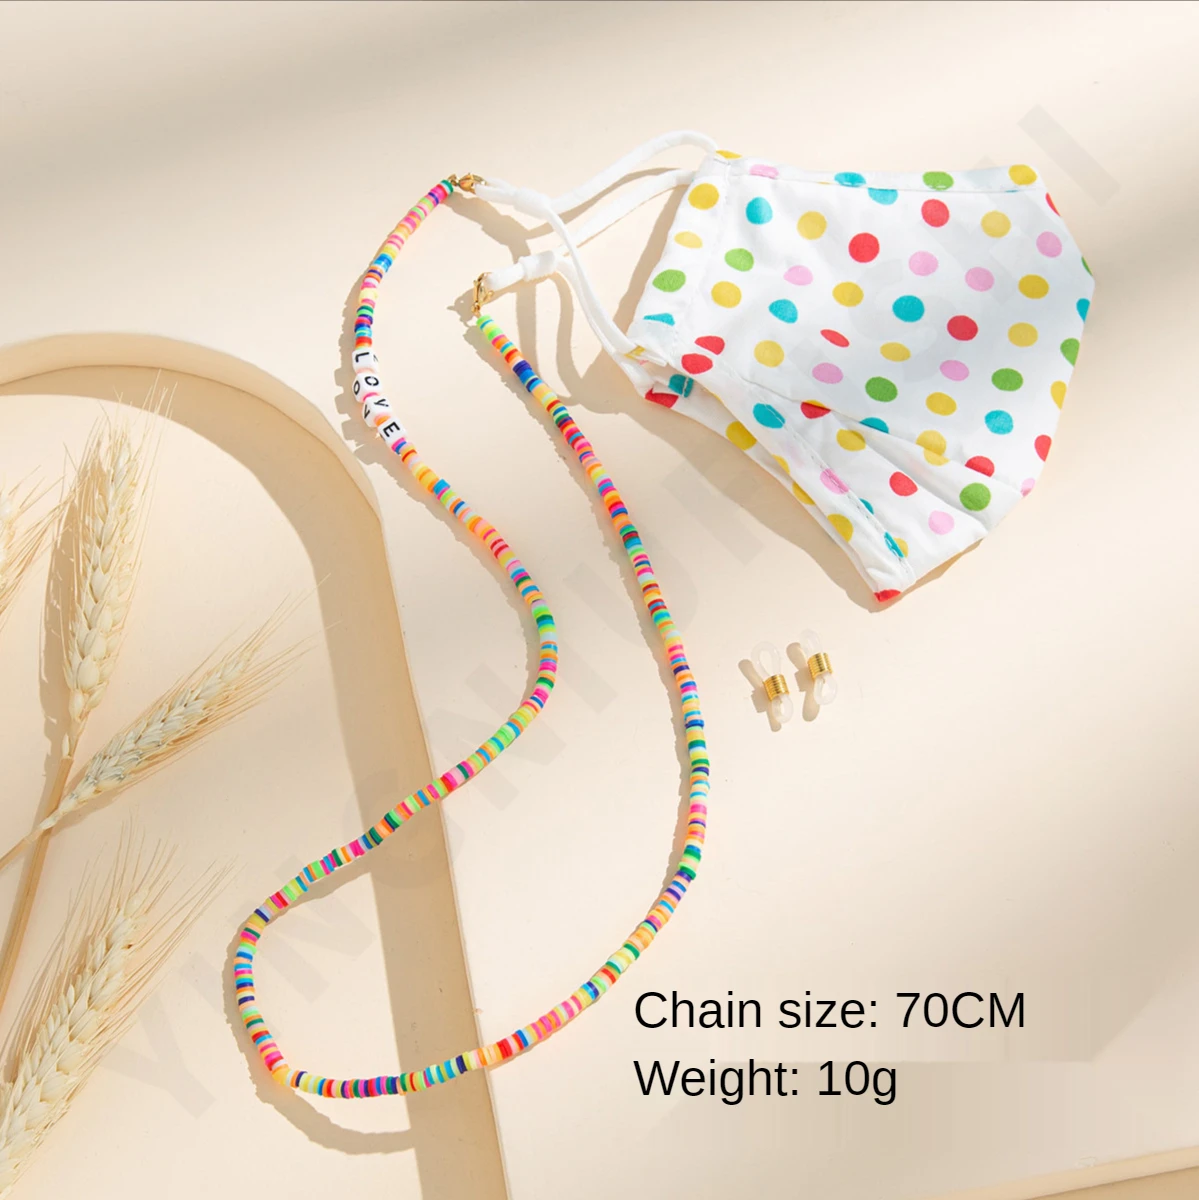 

Цепочка-держатель в стиле бохо для женщин и мужчин, разноцветное ожерелье с бусинами и шнурком для очков, шнурок для детей и студентов